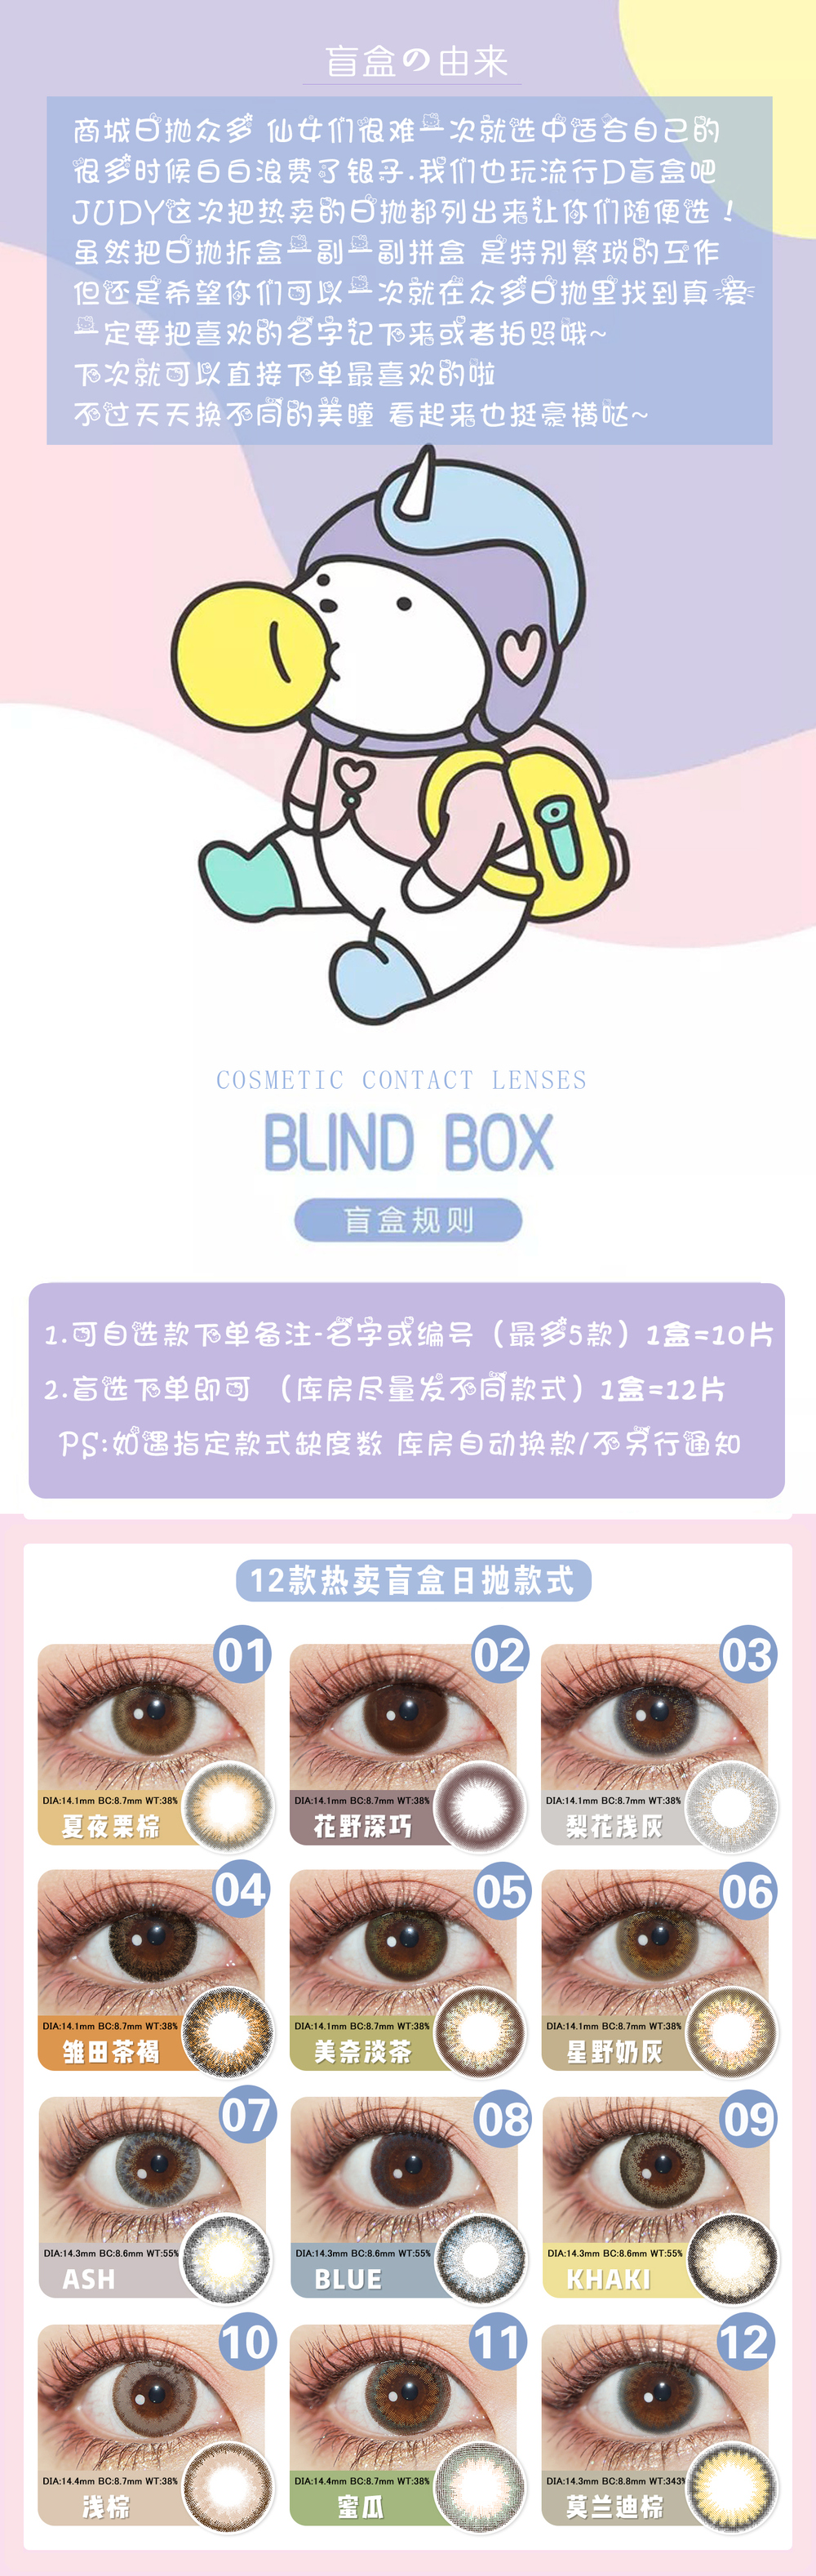 盲盒长图 (3).jpg